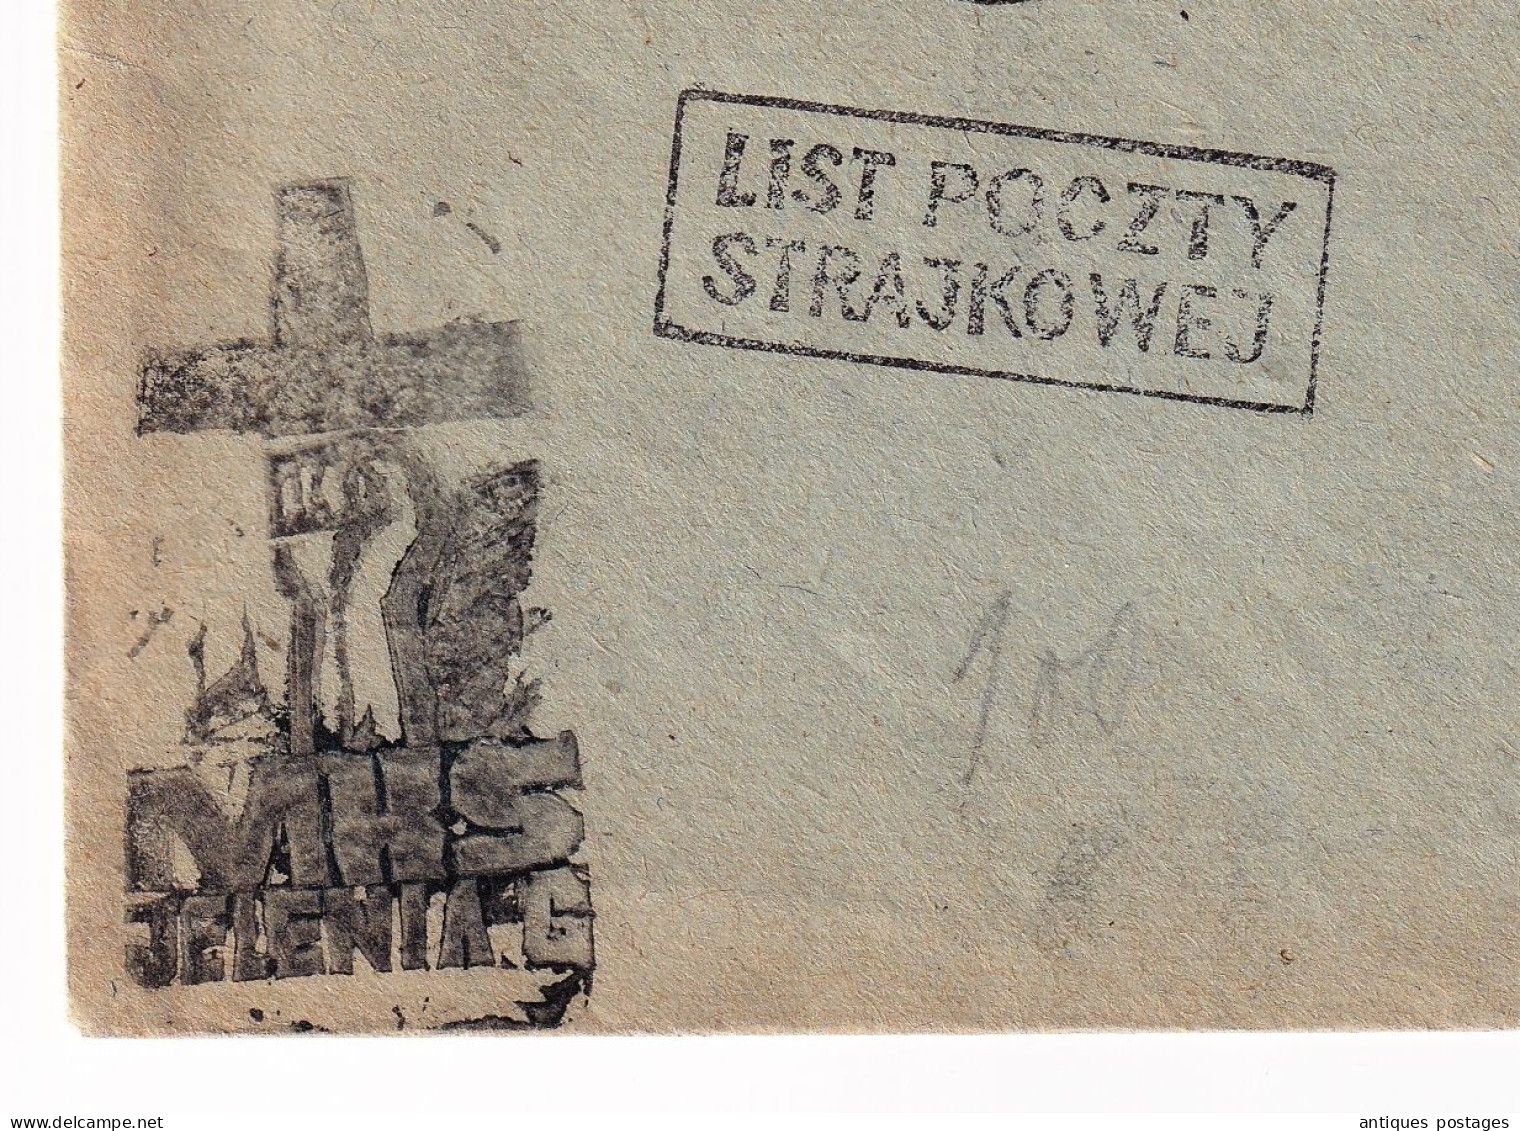 Lettre POCZTA STRAJKOWA Jelenia Góra 22 -1-1981 MKS Solidarność List Poczty Strajkowej Pologne Poland Polska - Briefe U. Dokumente